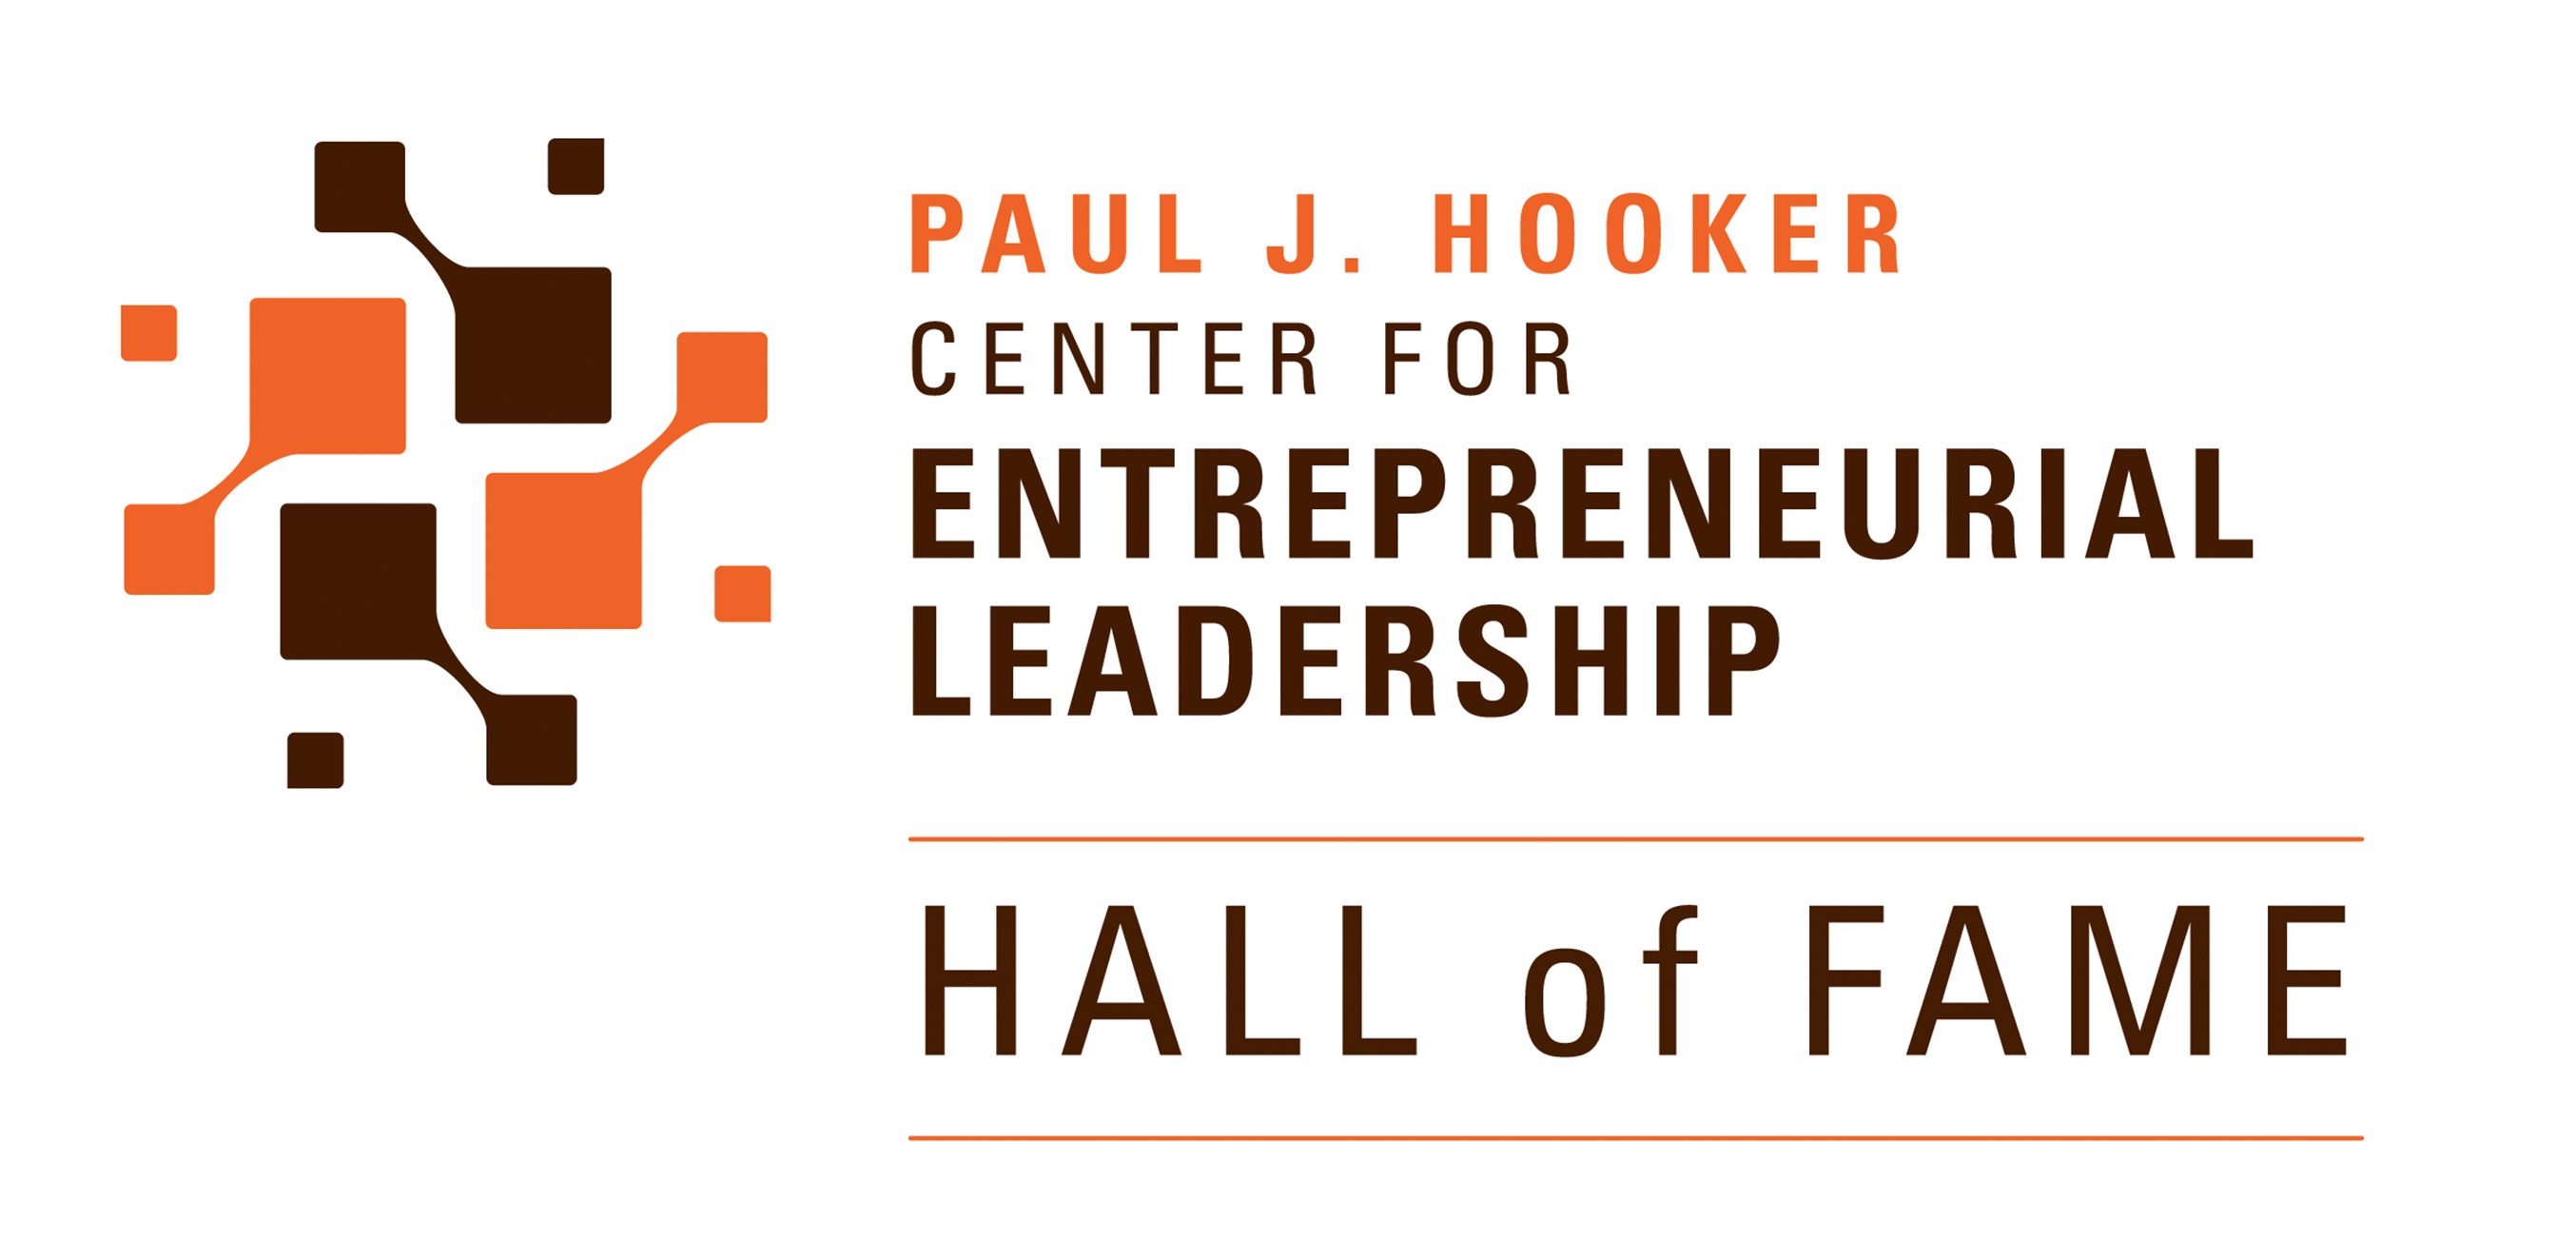  Paul J. Hooker Center for Entrepreneurial Leadership Hall of Fame